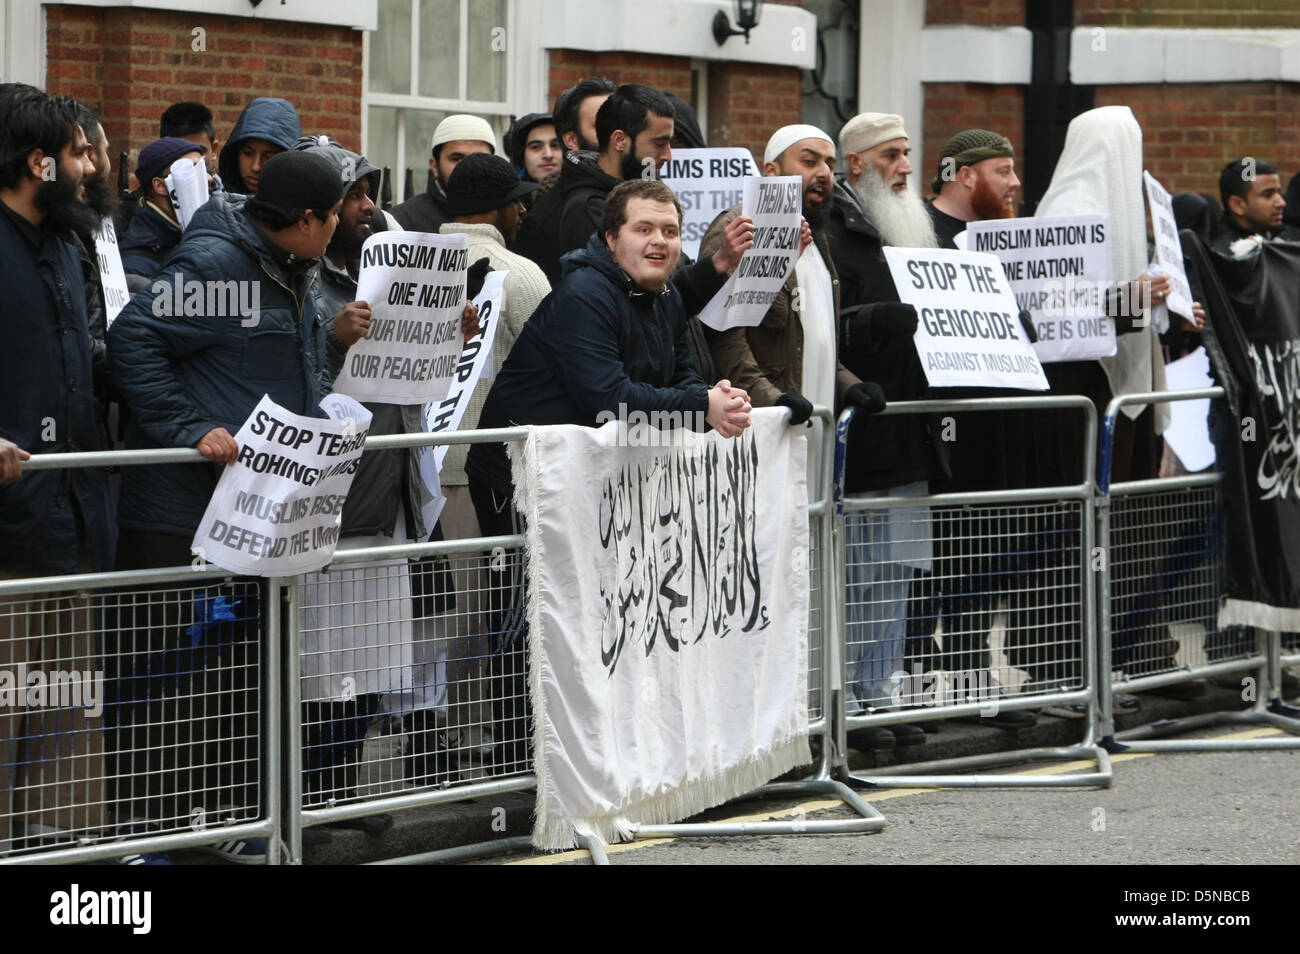 London, UK, 5 avril 2013 Anjem Choudary Muslim's groupe ait manifestation à l'extérieur de l'ambassade du Myanmar au cours de prétendues atrocités commises par les Bouddhistes contre les musulmans dans ce pays. Credit : martyn wheatley / Alamy Live News Banque D'Images